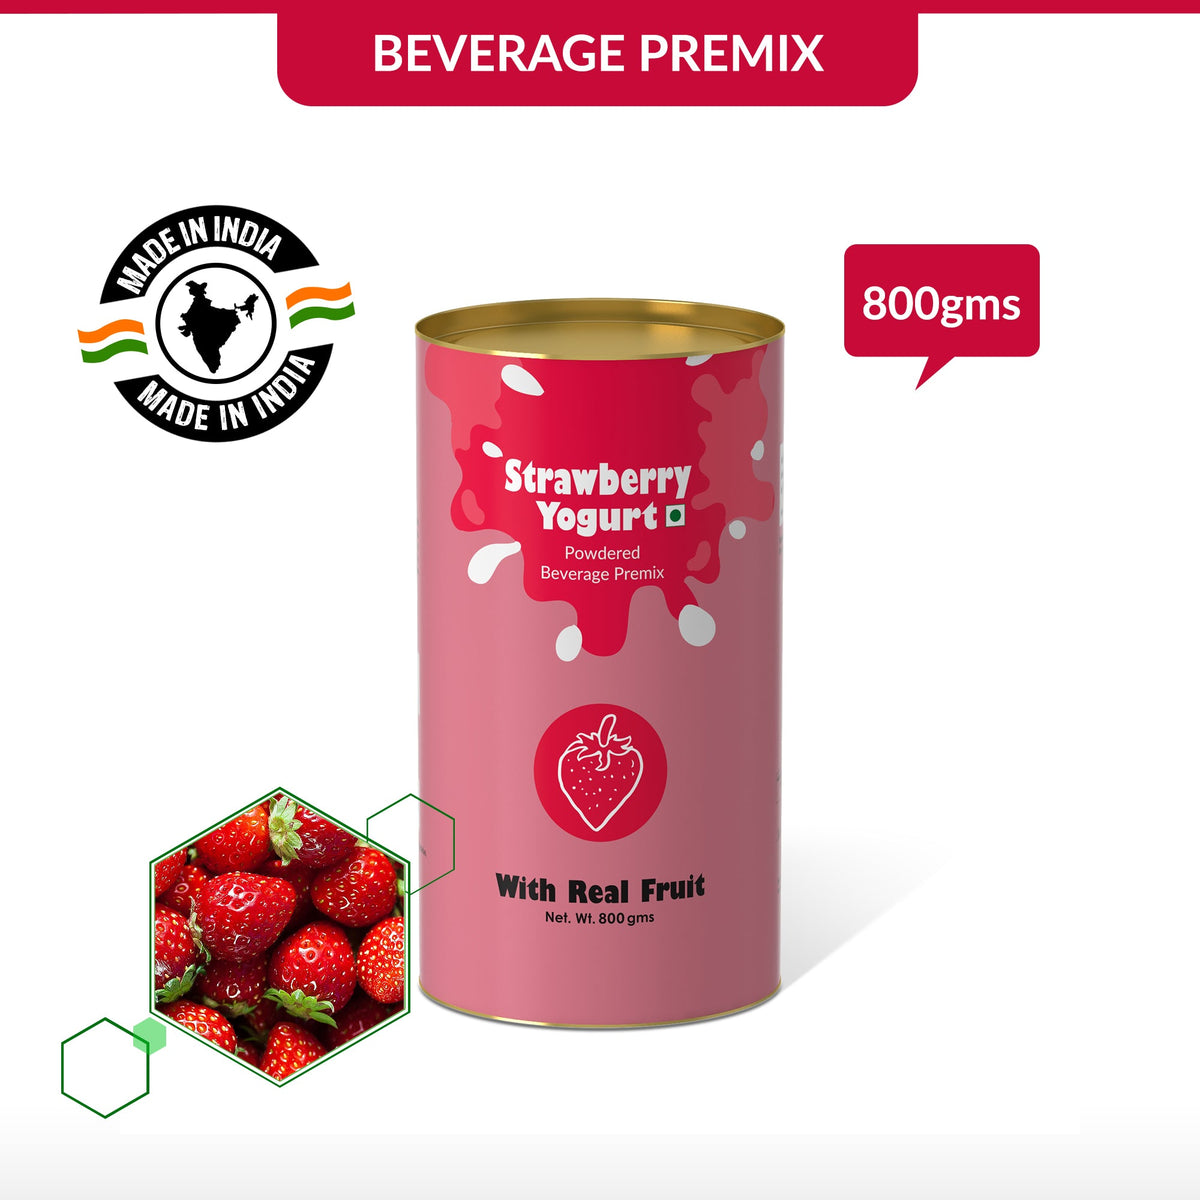 Strawberry Yogurt Mix